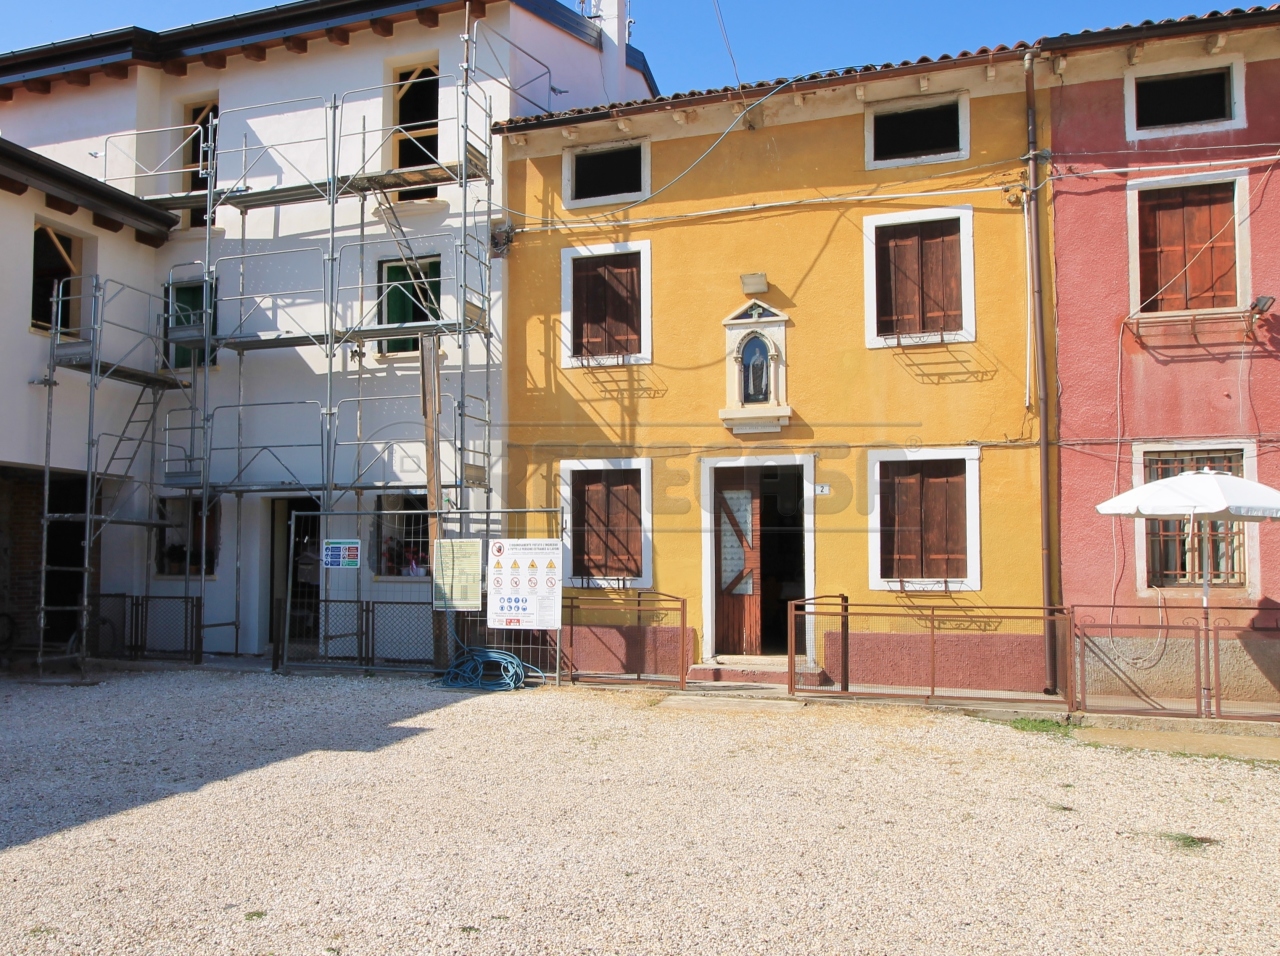 Rustico / Casale in vendita a Nogarole Vicentino, 8 locali, prezzo € 150.000 | PortaleAgenzieImmobiliari.it